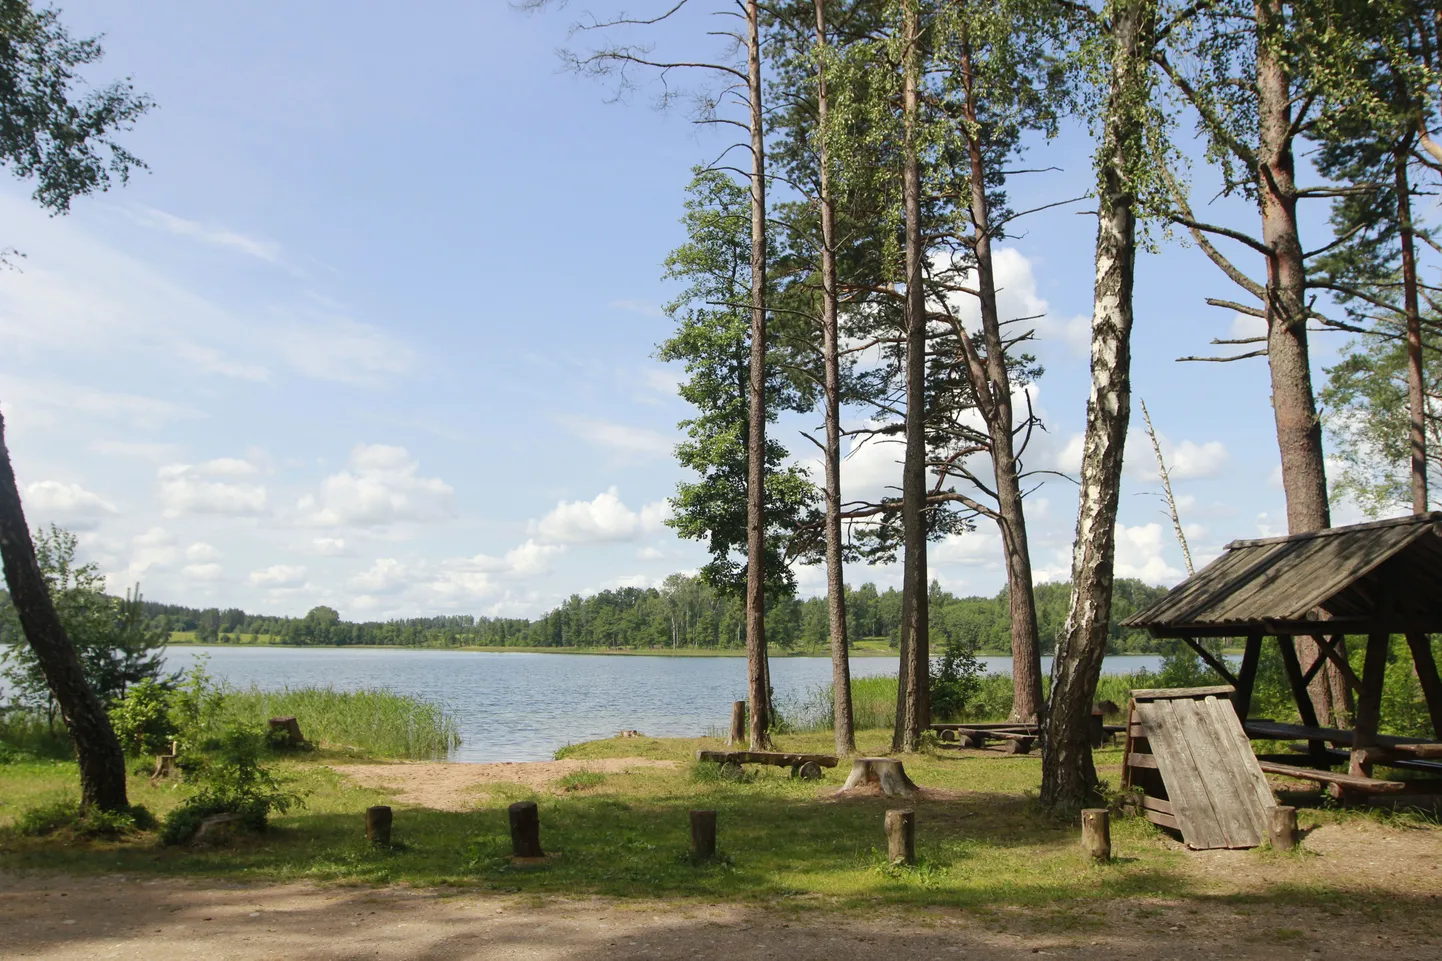 Seal kusagil on mõistatus, mida on aastasadu lahendada püütud ning legendid on Koorküla Valgjärvele Eestis ja kaugemalgi tuntust toonud.